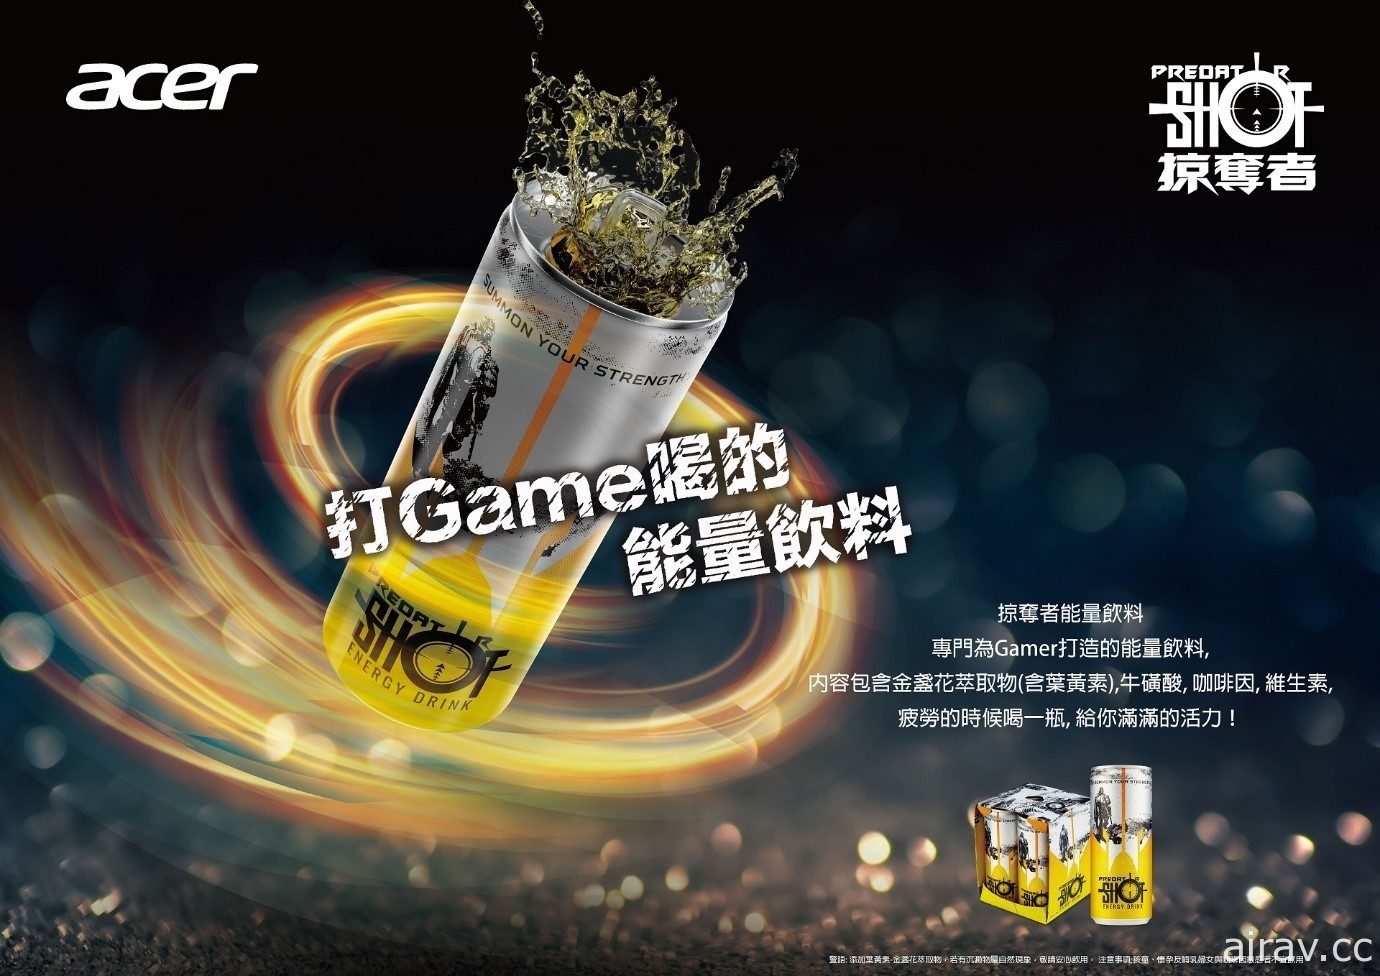 【TpGS 21】PLANET9 進駐台北電玩展 舉辦《Aim Lab》挑戰賽等